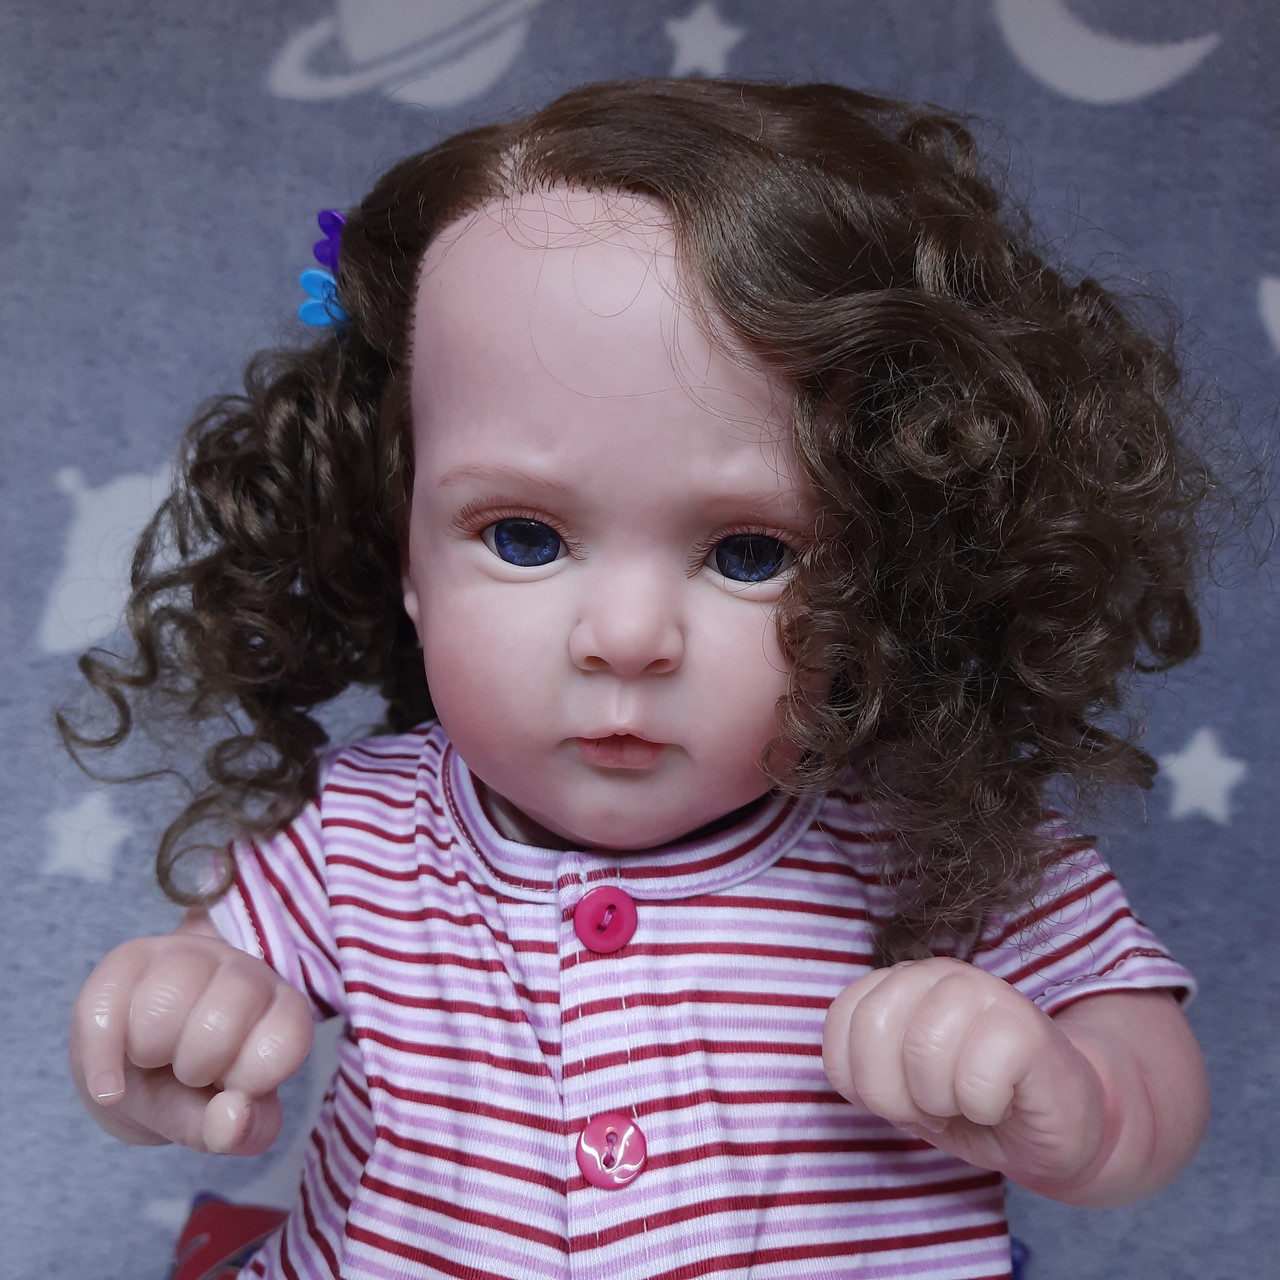 Реалістична лялька Реборн (Reborn) 50 см гарна дівчинка з довгим волоссям та м'яким тілом, як жива справжня дитина